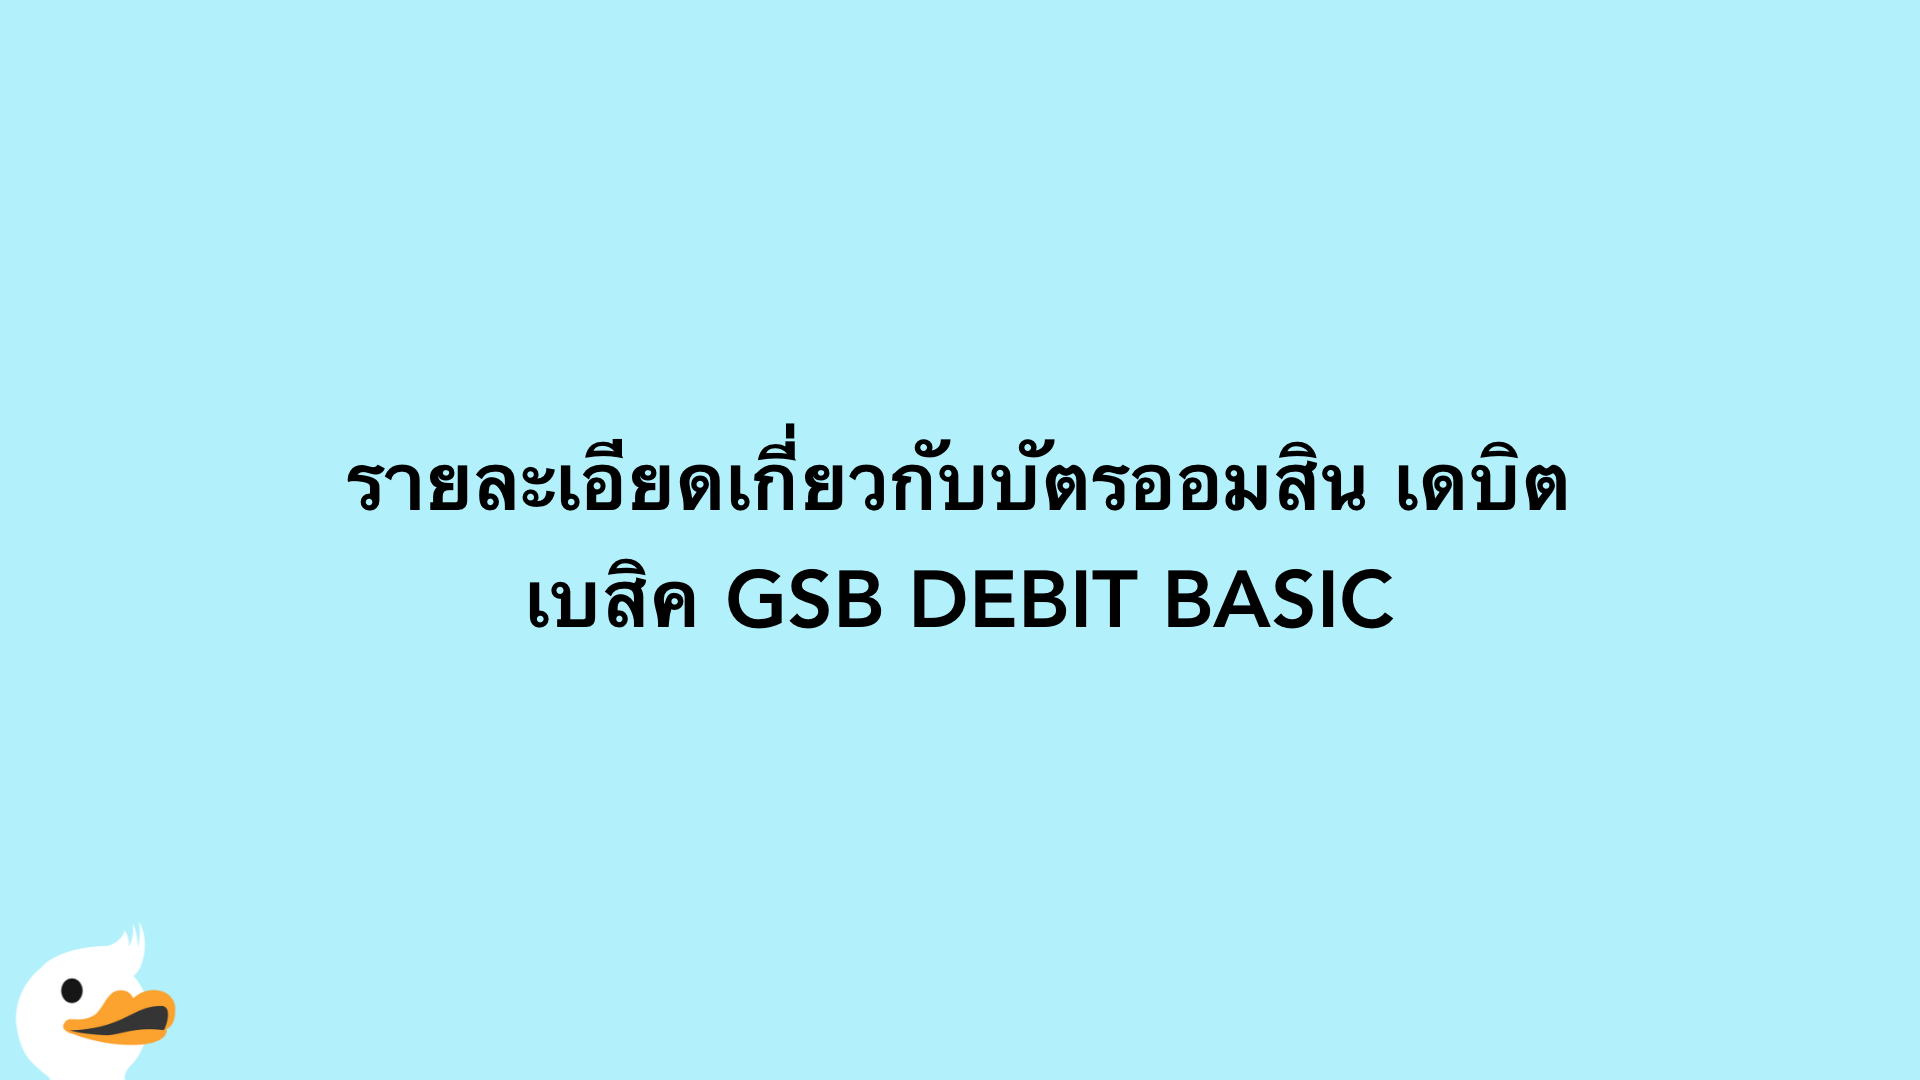 รายละเอียดเกี่ยวกับบัตรออมสิน เดบิต เบสิค GSB DEBIT BASIC